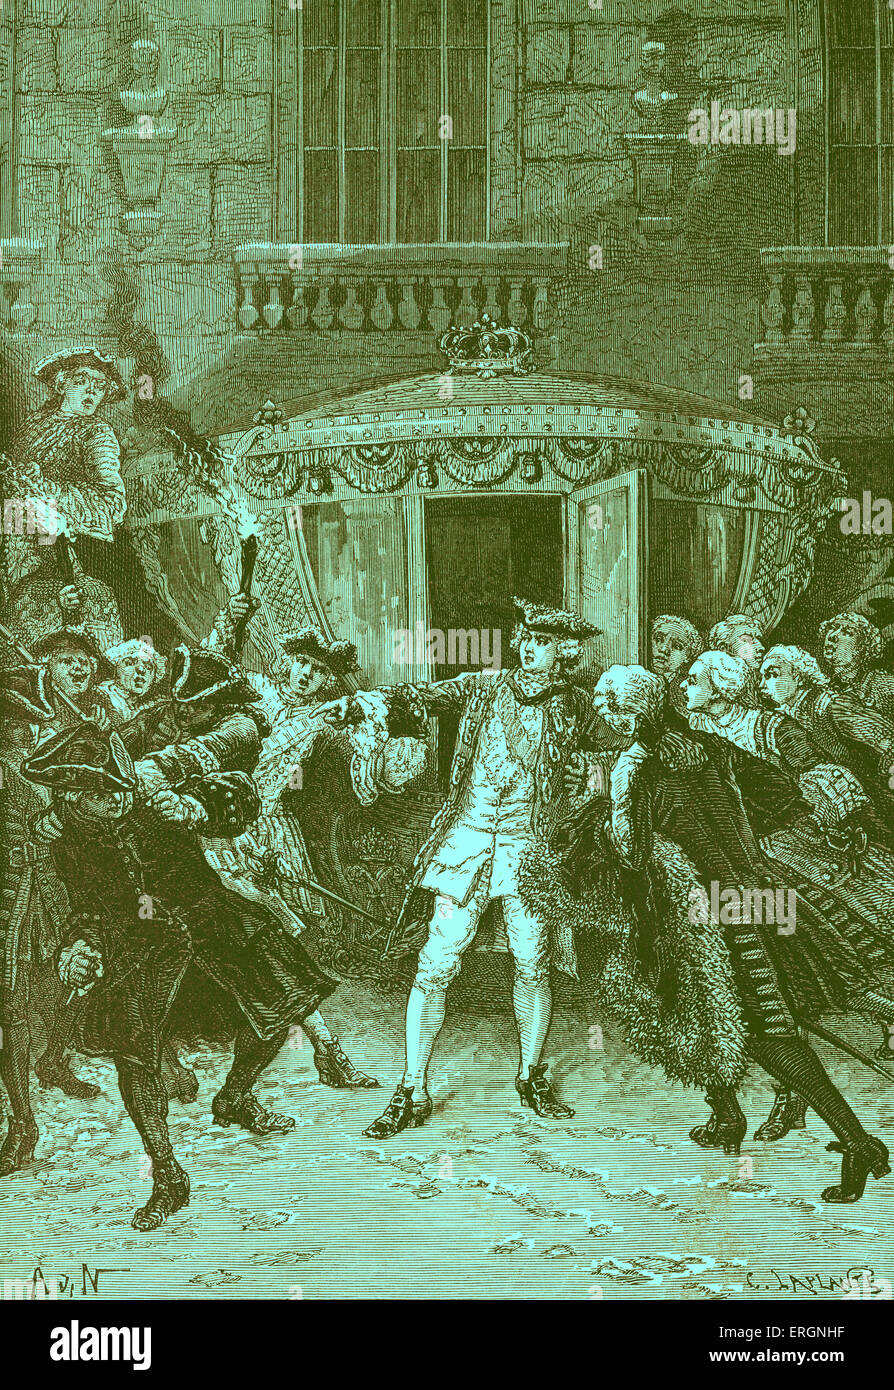 El 5 de enero de 1757, como Luis XV, rey de Francia estaba entrando en su carro, Robert-François Damiens se apresuraron y apuñaló con un cuchillo. Fue condenado como un regicide y condenados a ser dibujado y acuartelados. Robert-François Damiens, el 9 de enero de 1715 - 28 de marzo de 1757. Foto de stock